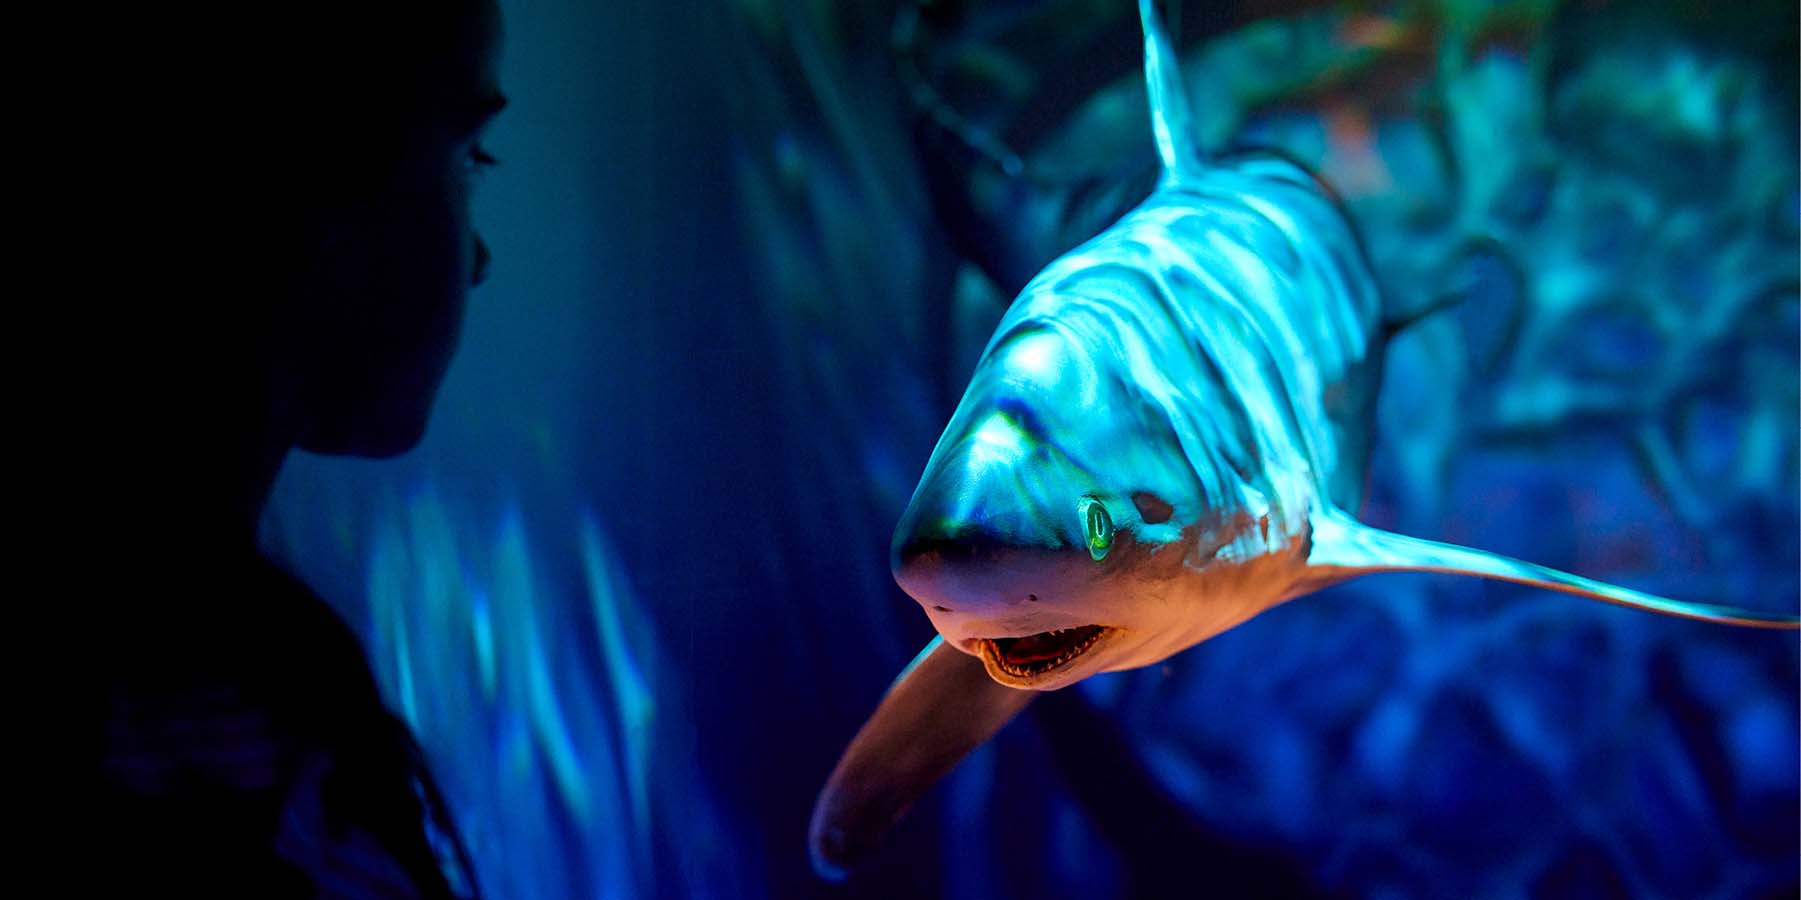 Tyama Sea Country featuring Thresher shark model under dappled water-like lighting